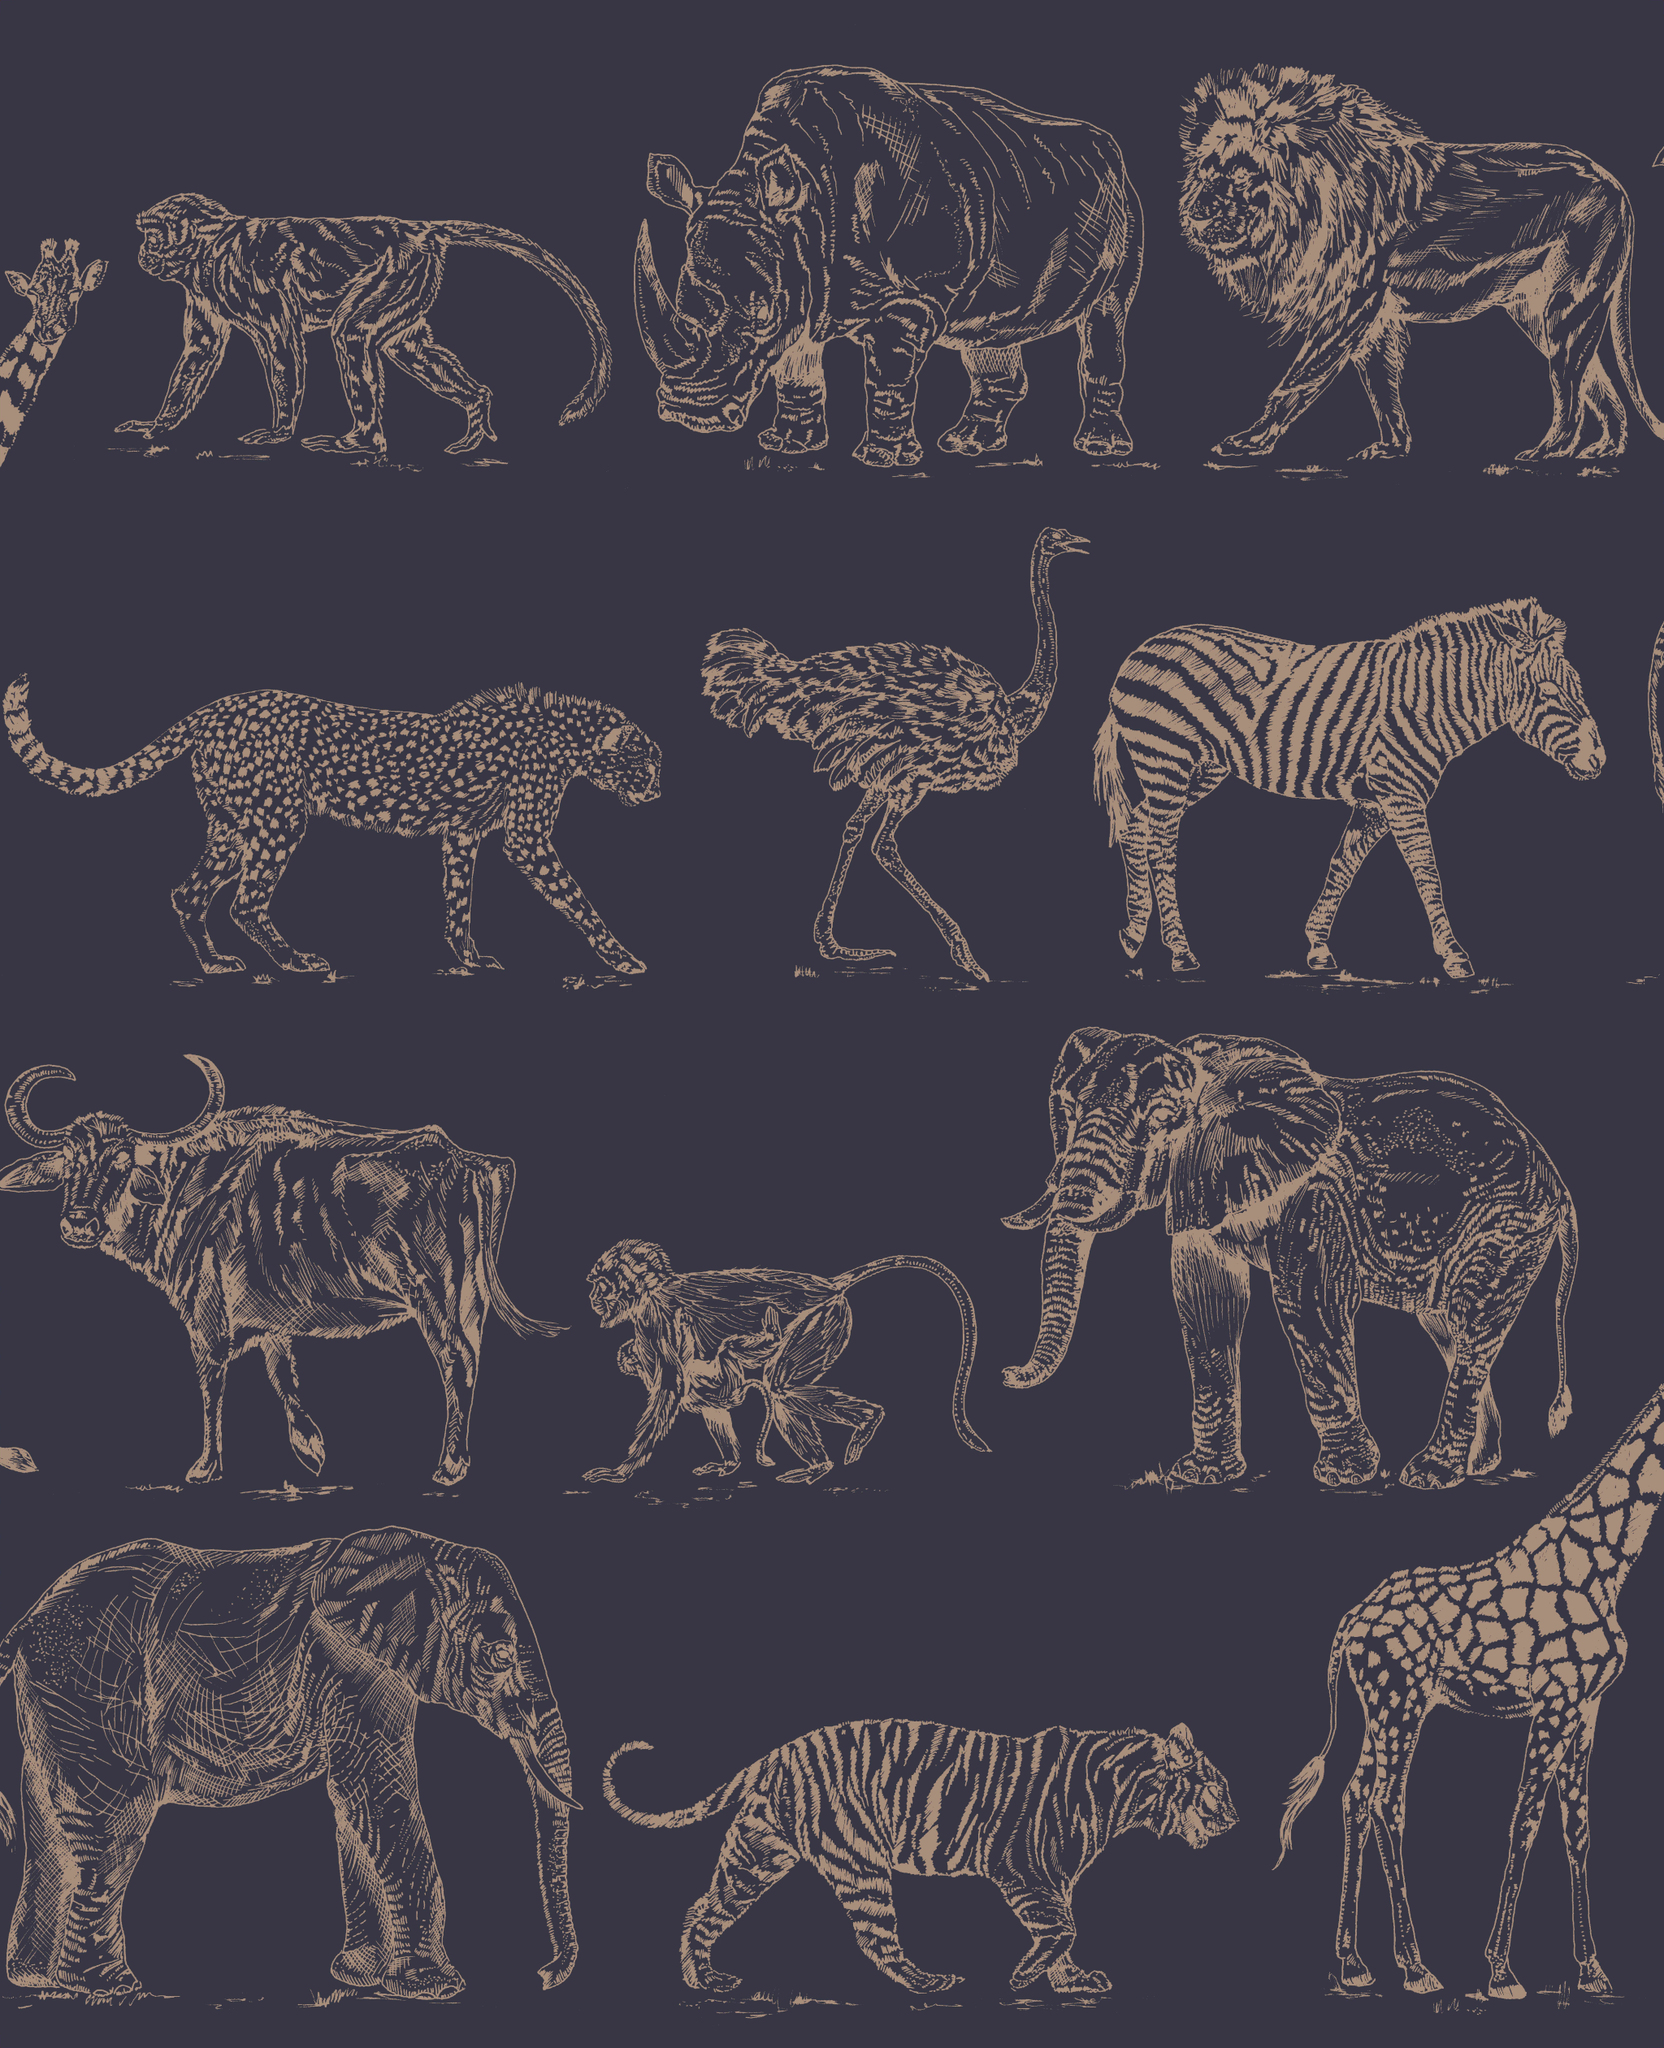 サファリ動物の壁紙,野生動物,陸生動物,ネコ科,パターン,大きな猫